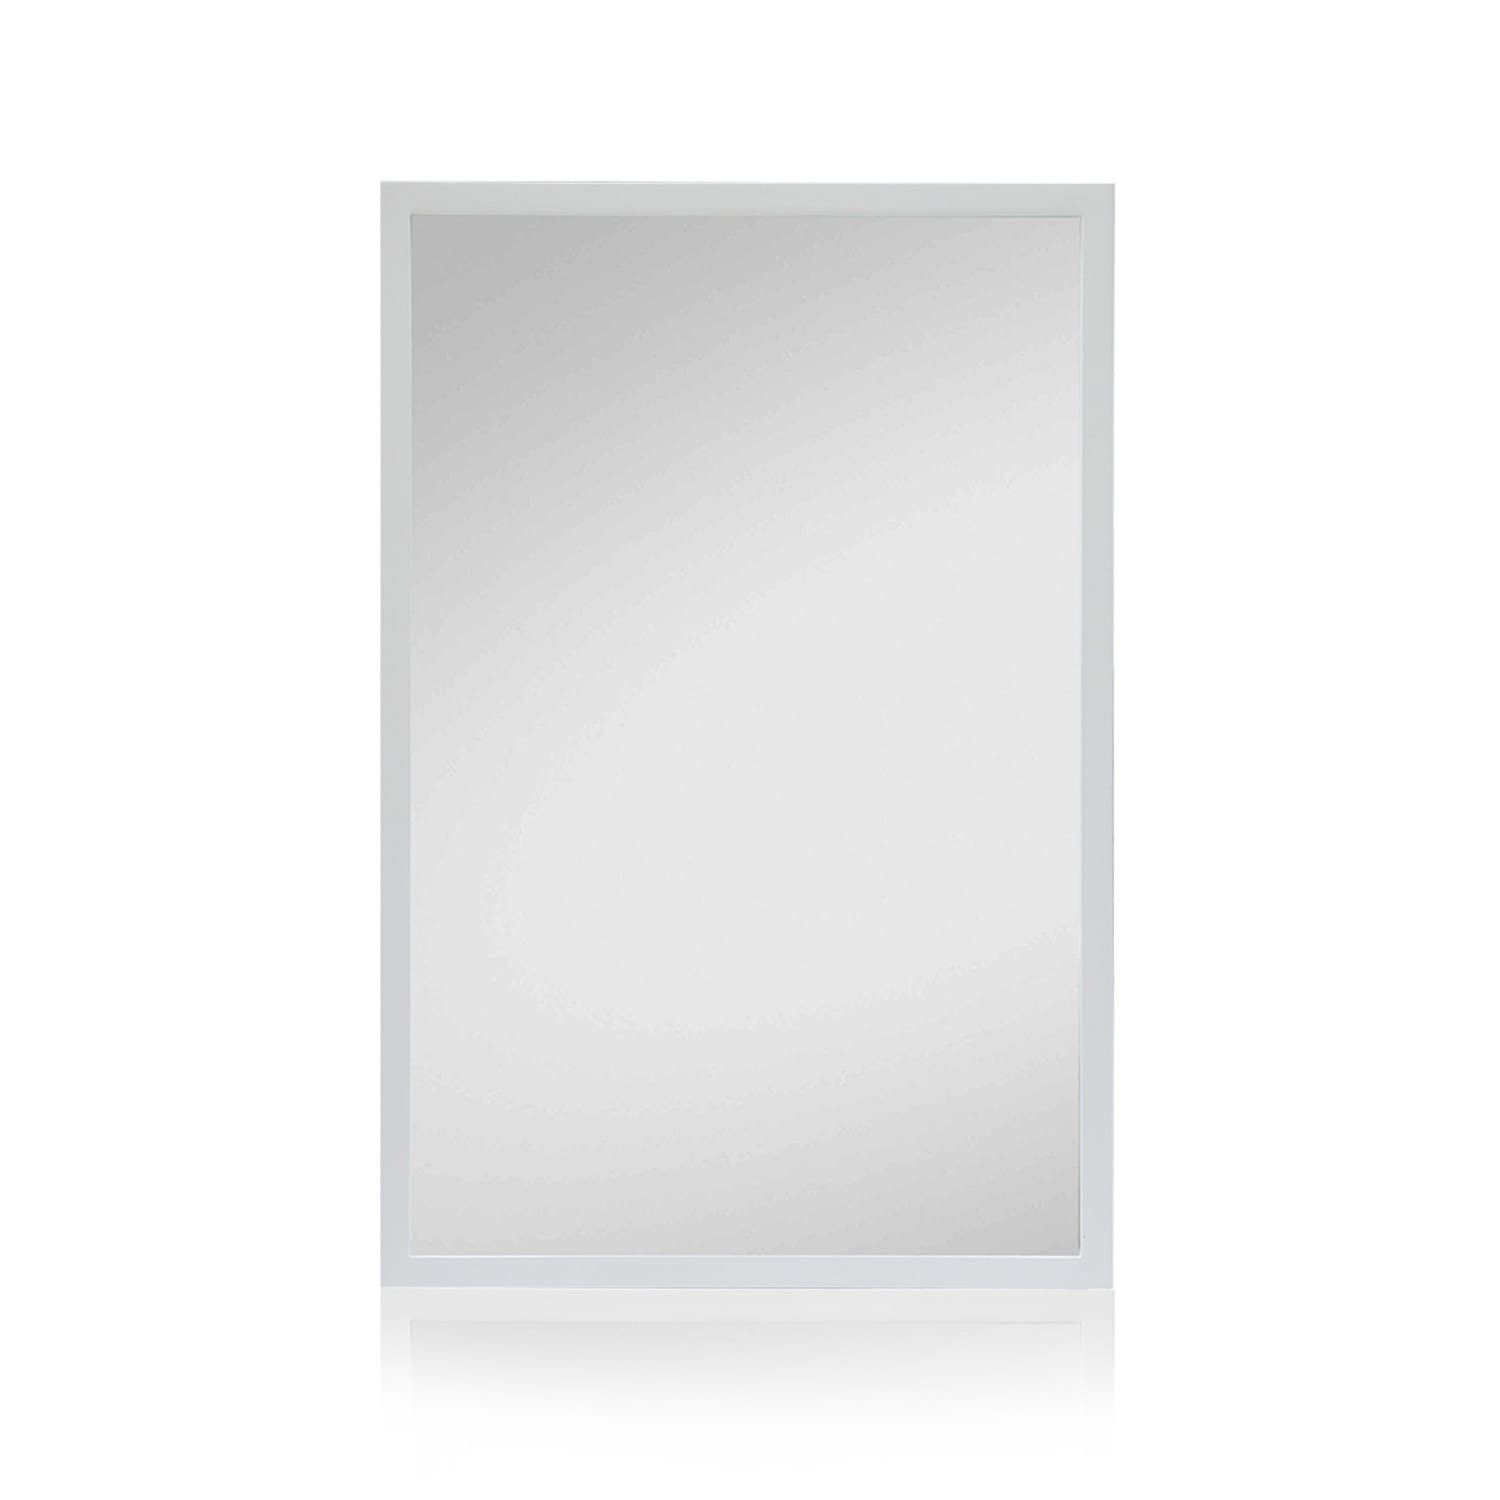 Spiegel Weiß | Chic Arsenal Wandspiegel Casa Weiß